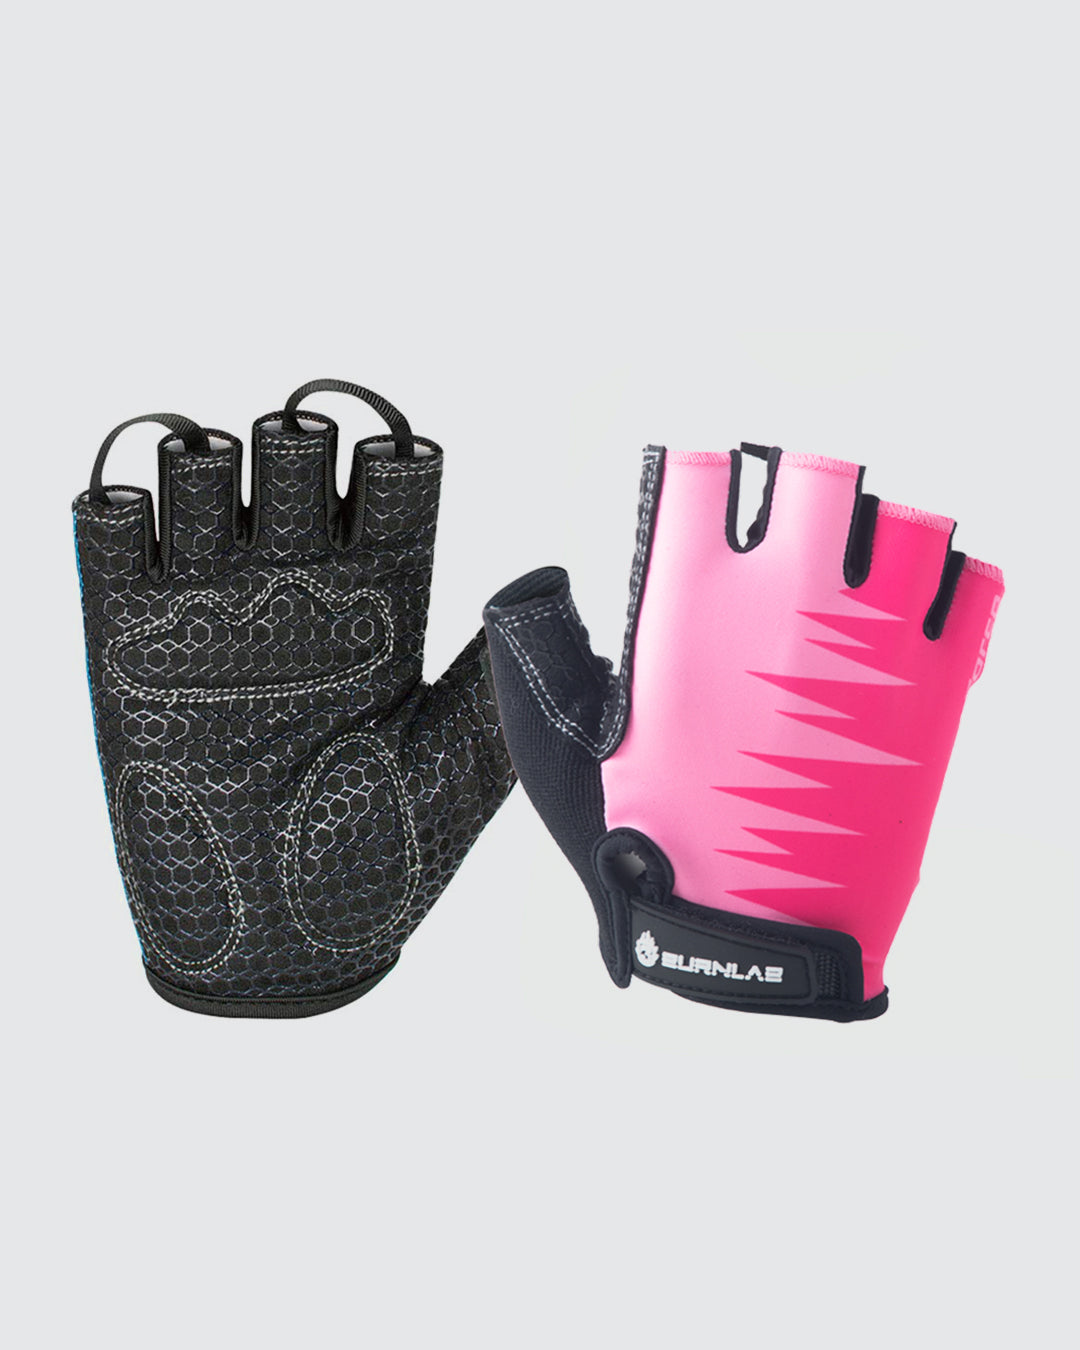 Workout gloves vs bare hands - Burnlab –